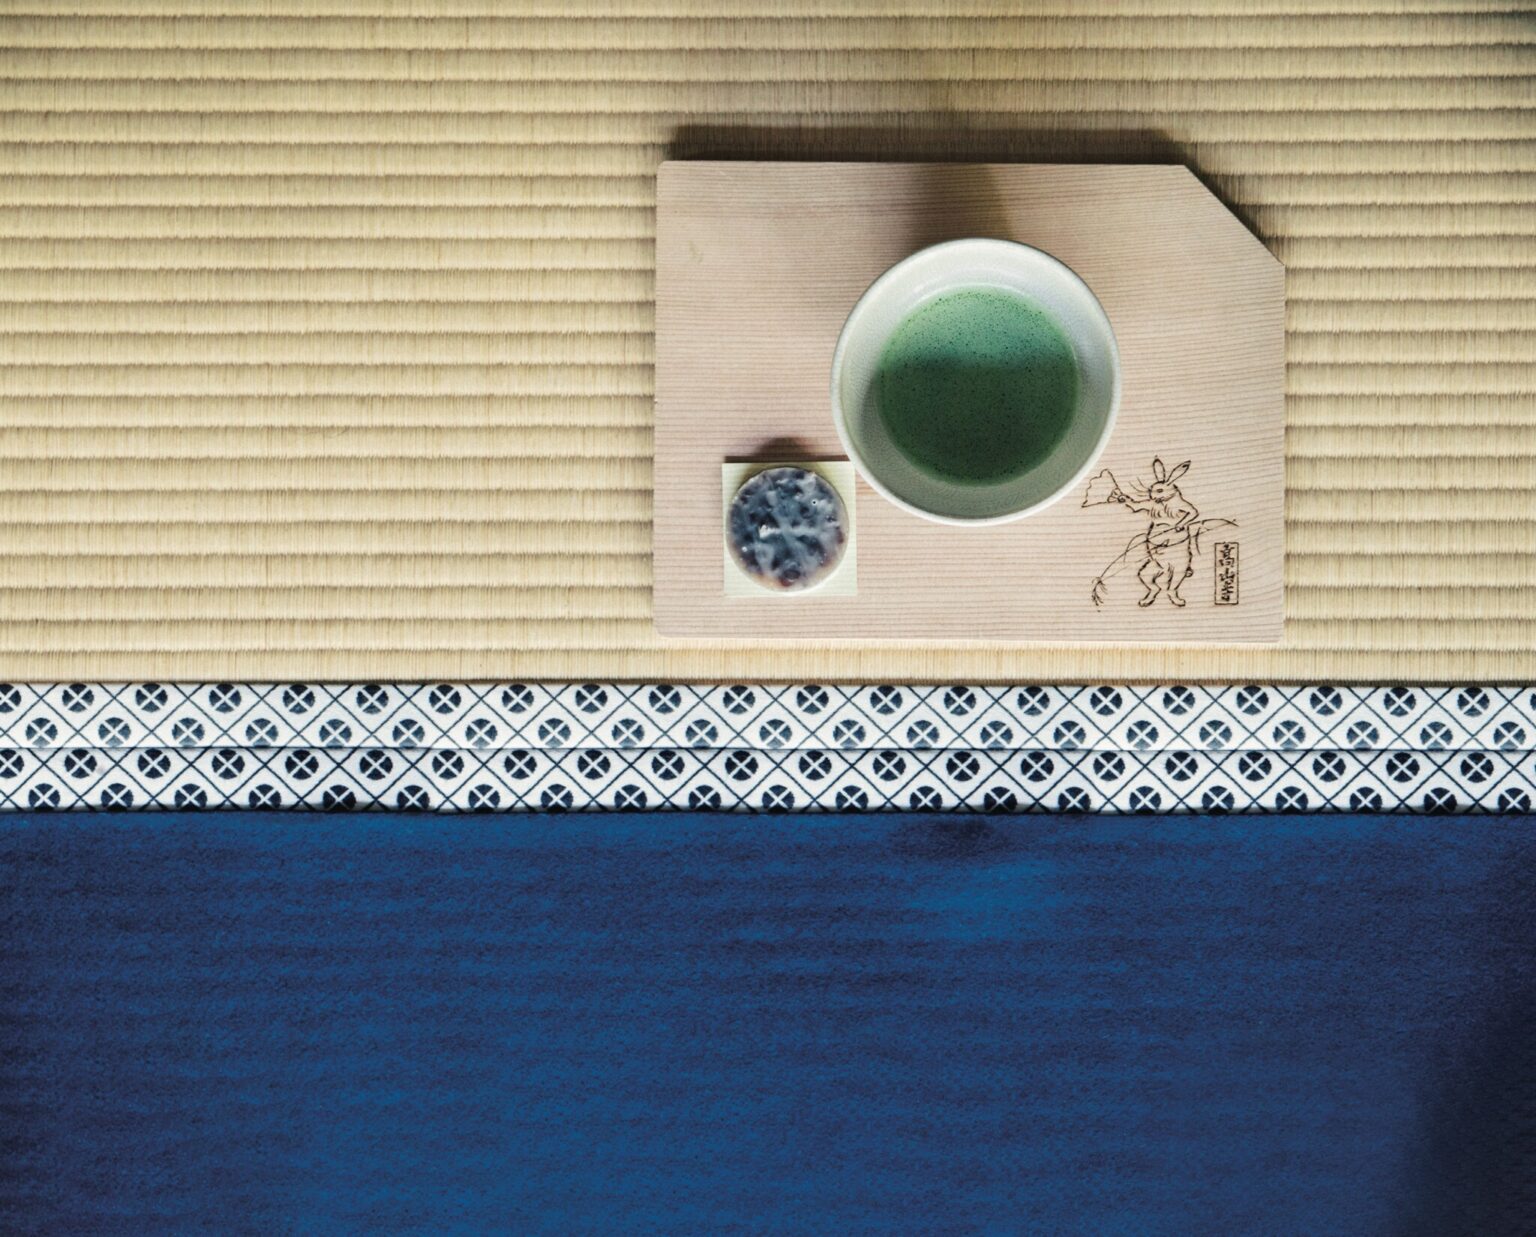 革新の繰り返しで伝統が育まれてきた京都では、茶の世界も常に新しいムーブメントが。老舗から最新店までを巡り、お茶と共にある豊かな時間を手に入れたい。写真は、栂尾山 高山寺。日本最古の茶園を持つ、茶栽培の起源となる古刹だ。